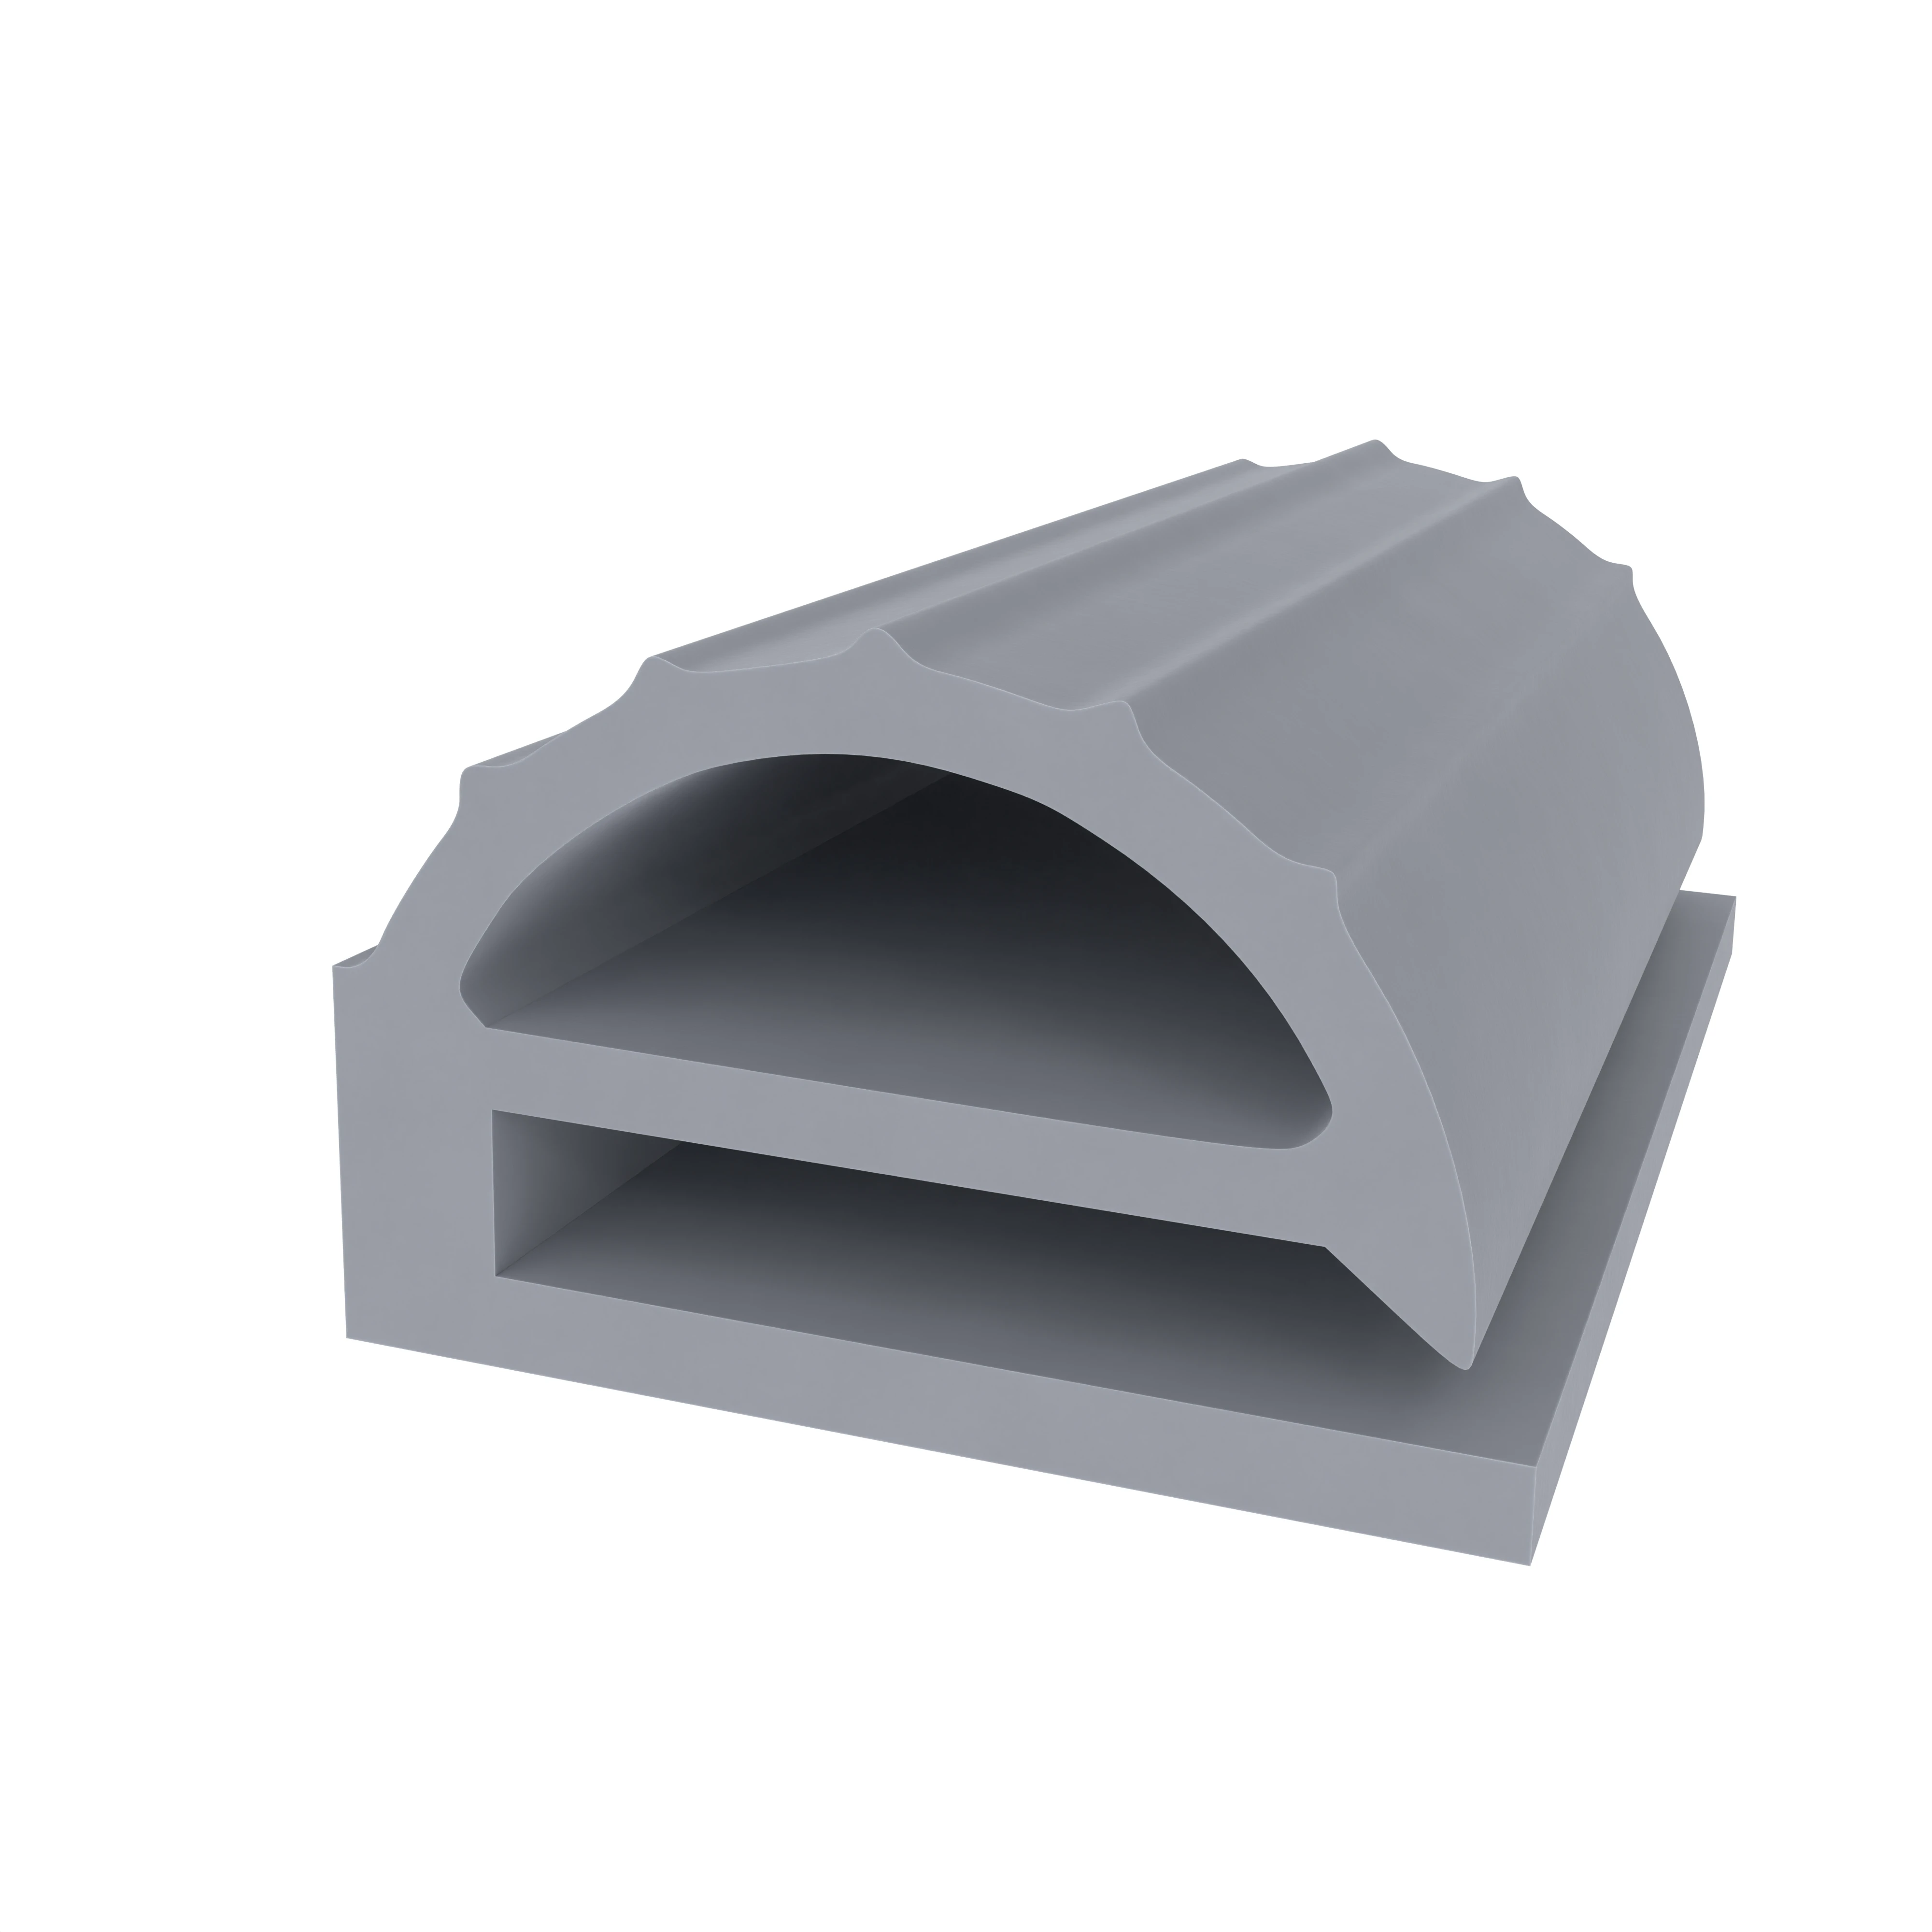 Kühlschrankdichtung für Bosch und Wurlizer | 12 mm Höhe | Farbe: grau